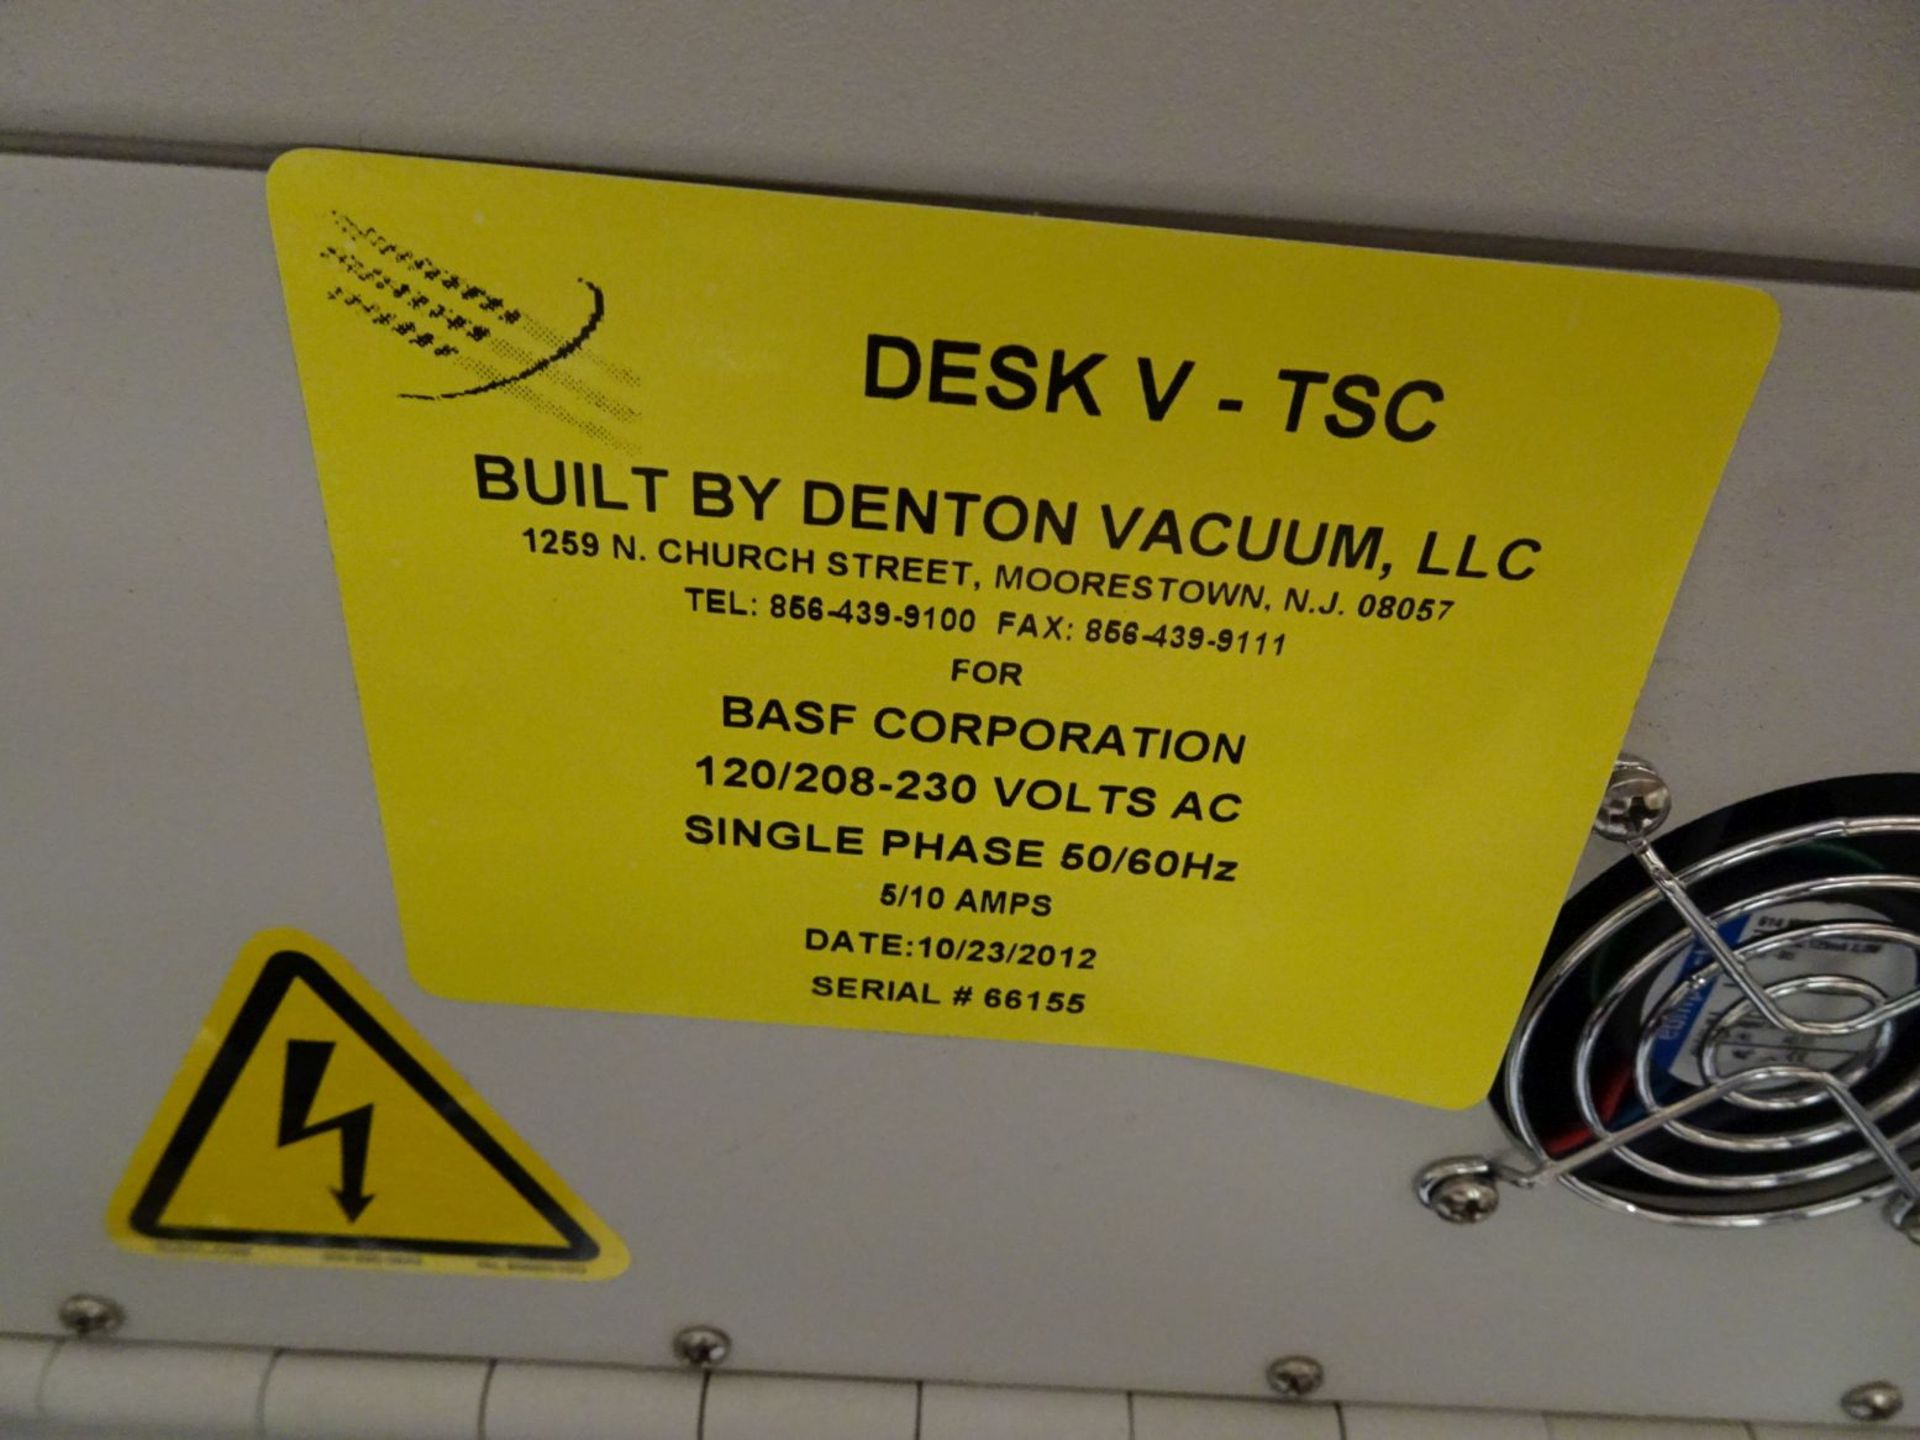 Denton Vacuum Desk V -TSC Carbon Evaporation Benchtop Sputtering Coater - Image 6 of 8